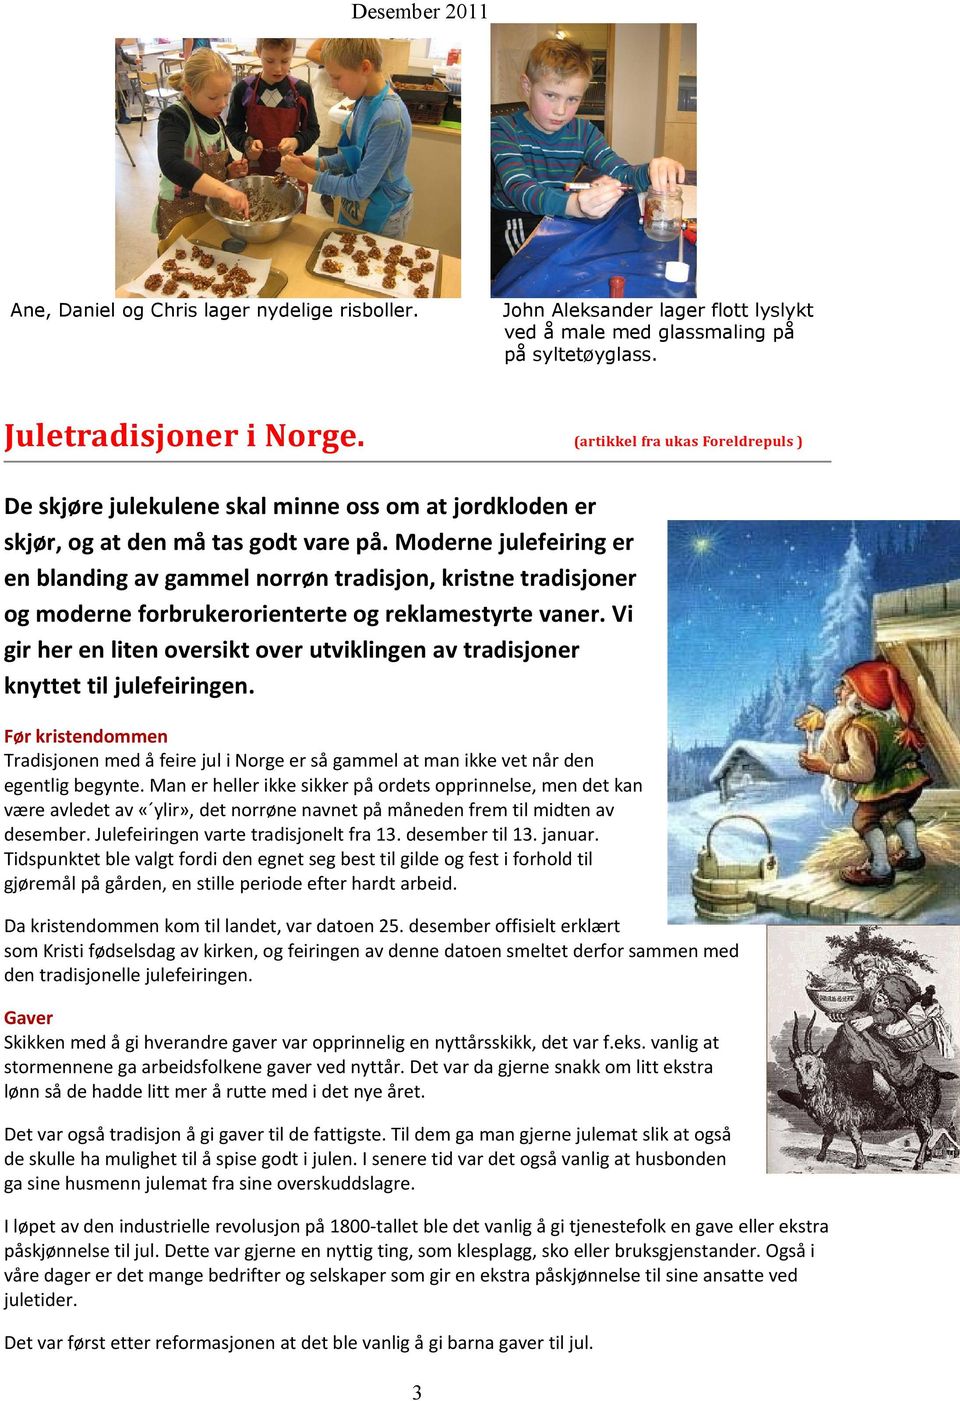 Moderne julefeiring er en blanding av gammel norrøn tradisjon, kristne tradisjoner og moderne forbrukerorienterte og reklamestyrte vaner.